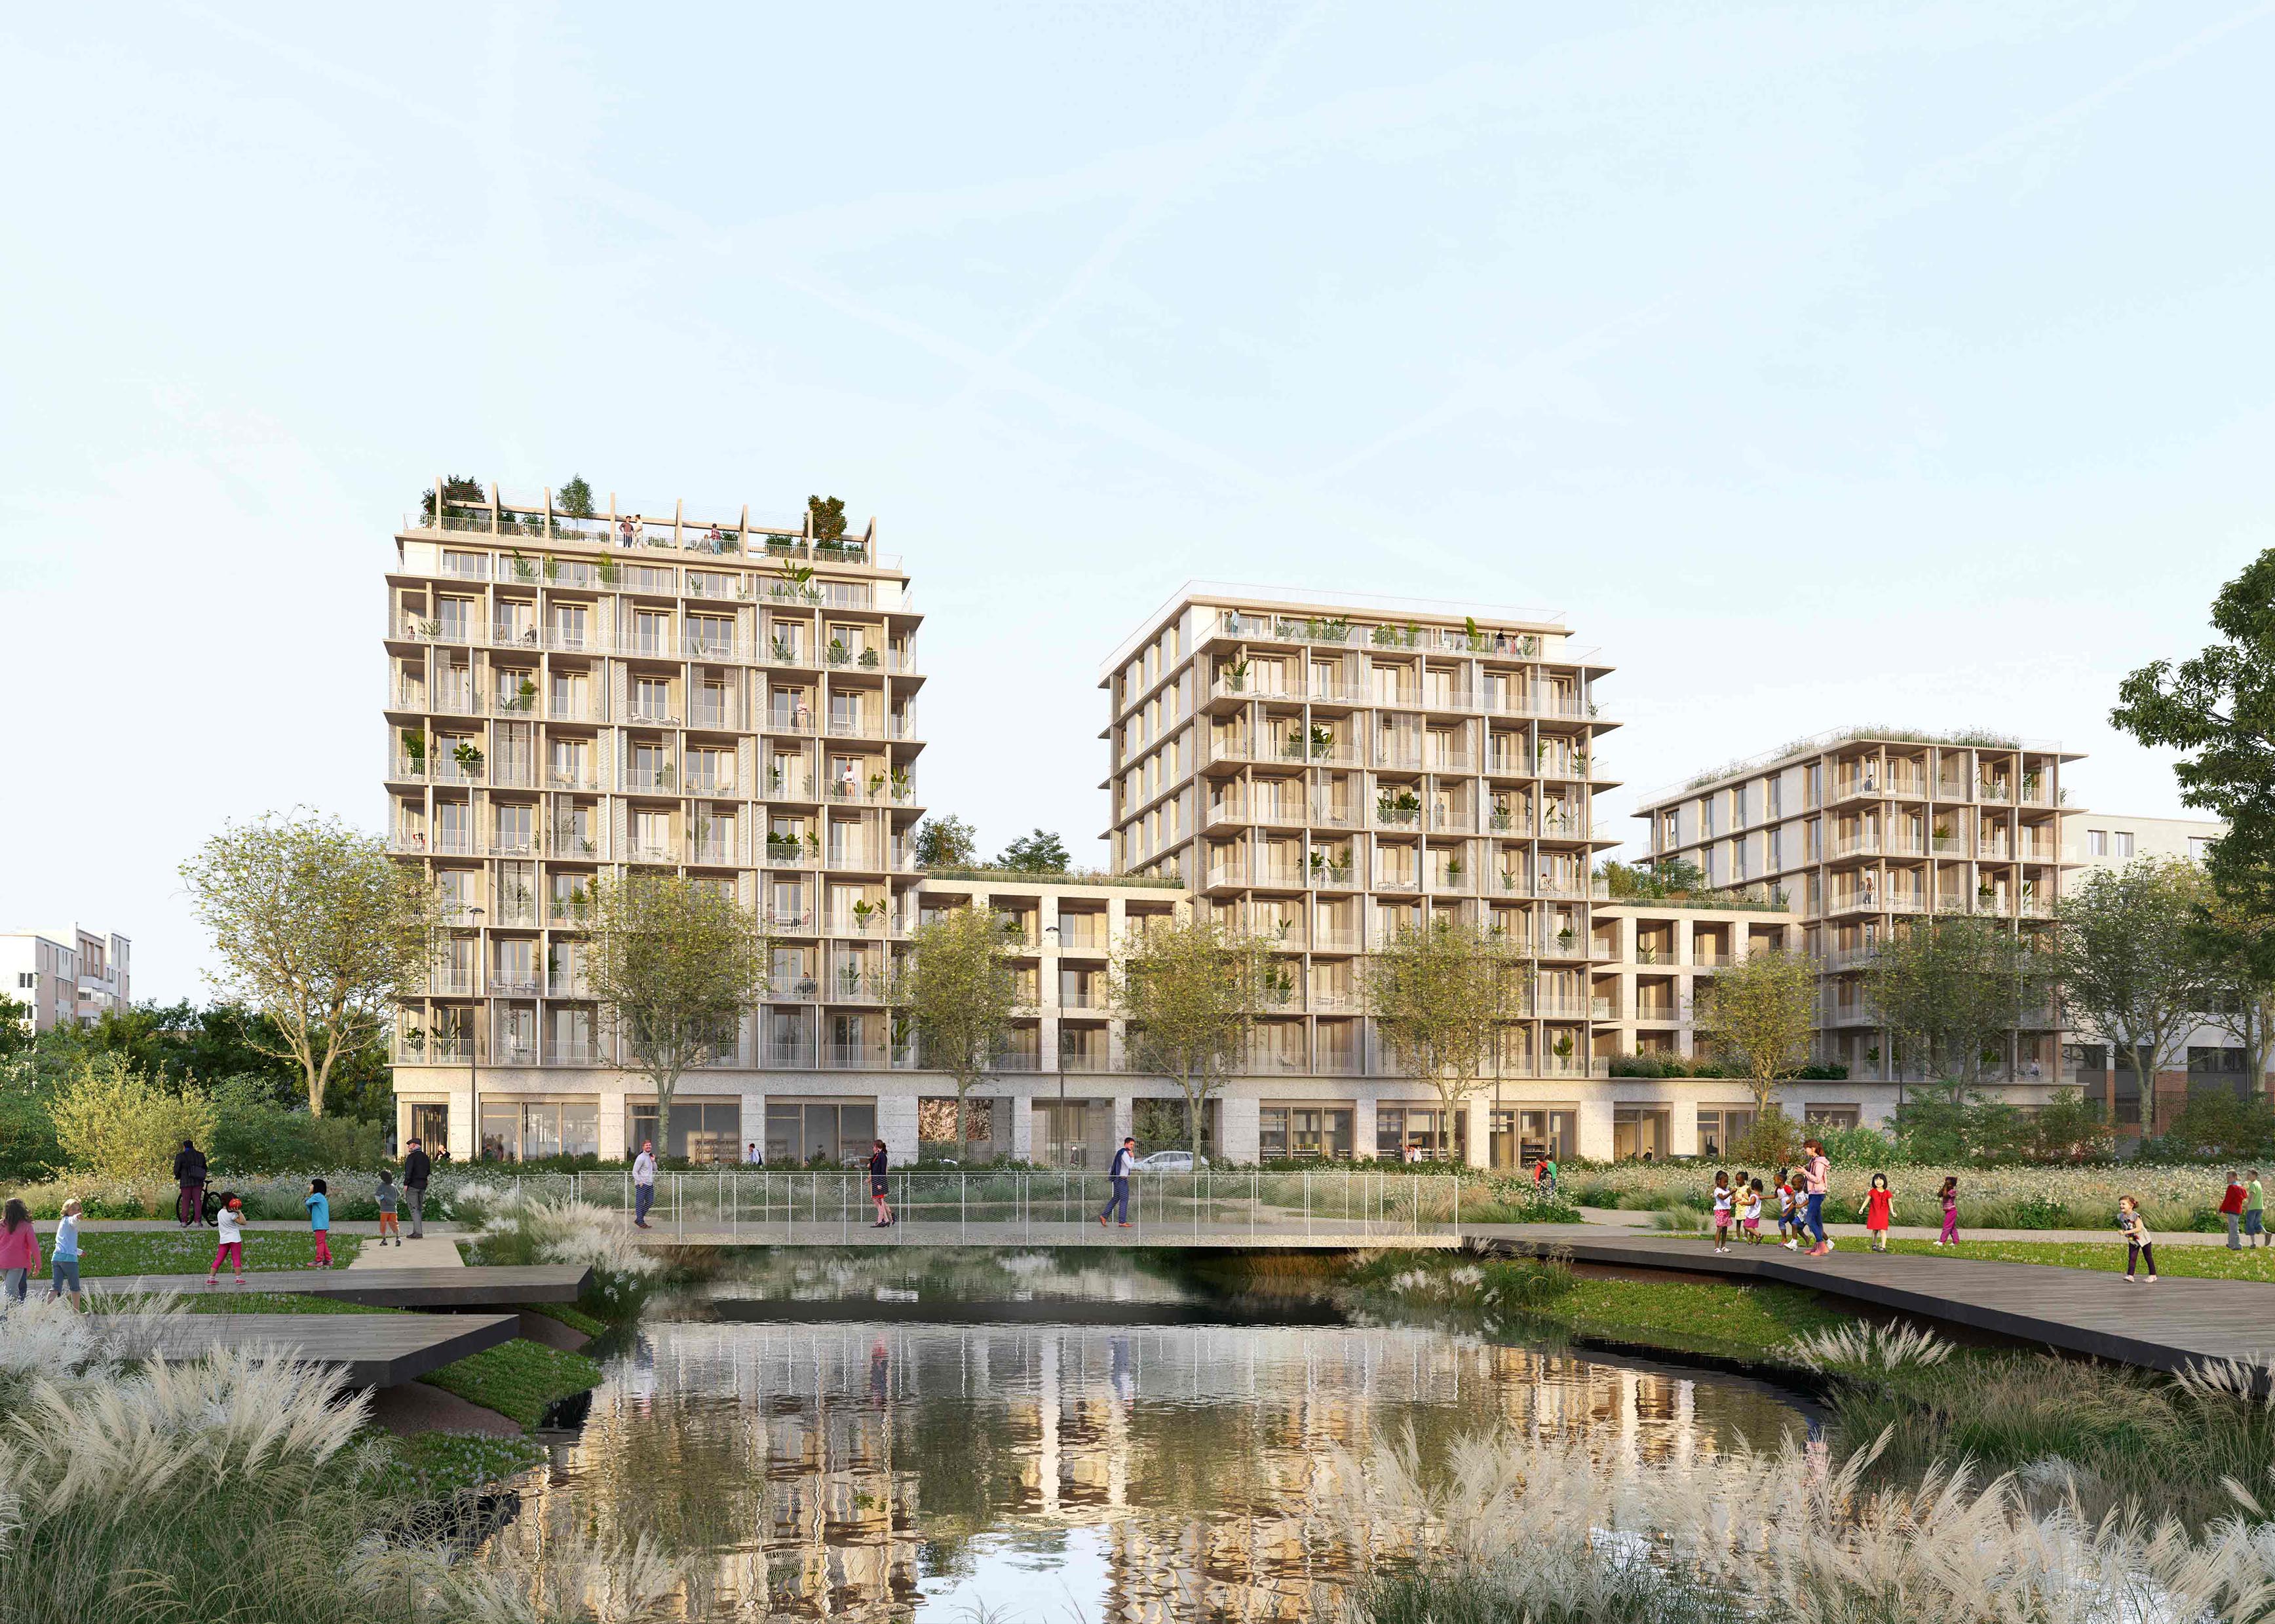 110 logements bois-paille à Paris ZAC Python Duvernois - Loto archilab perspectiviste